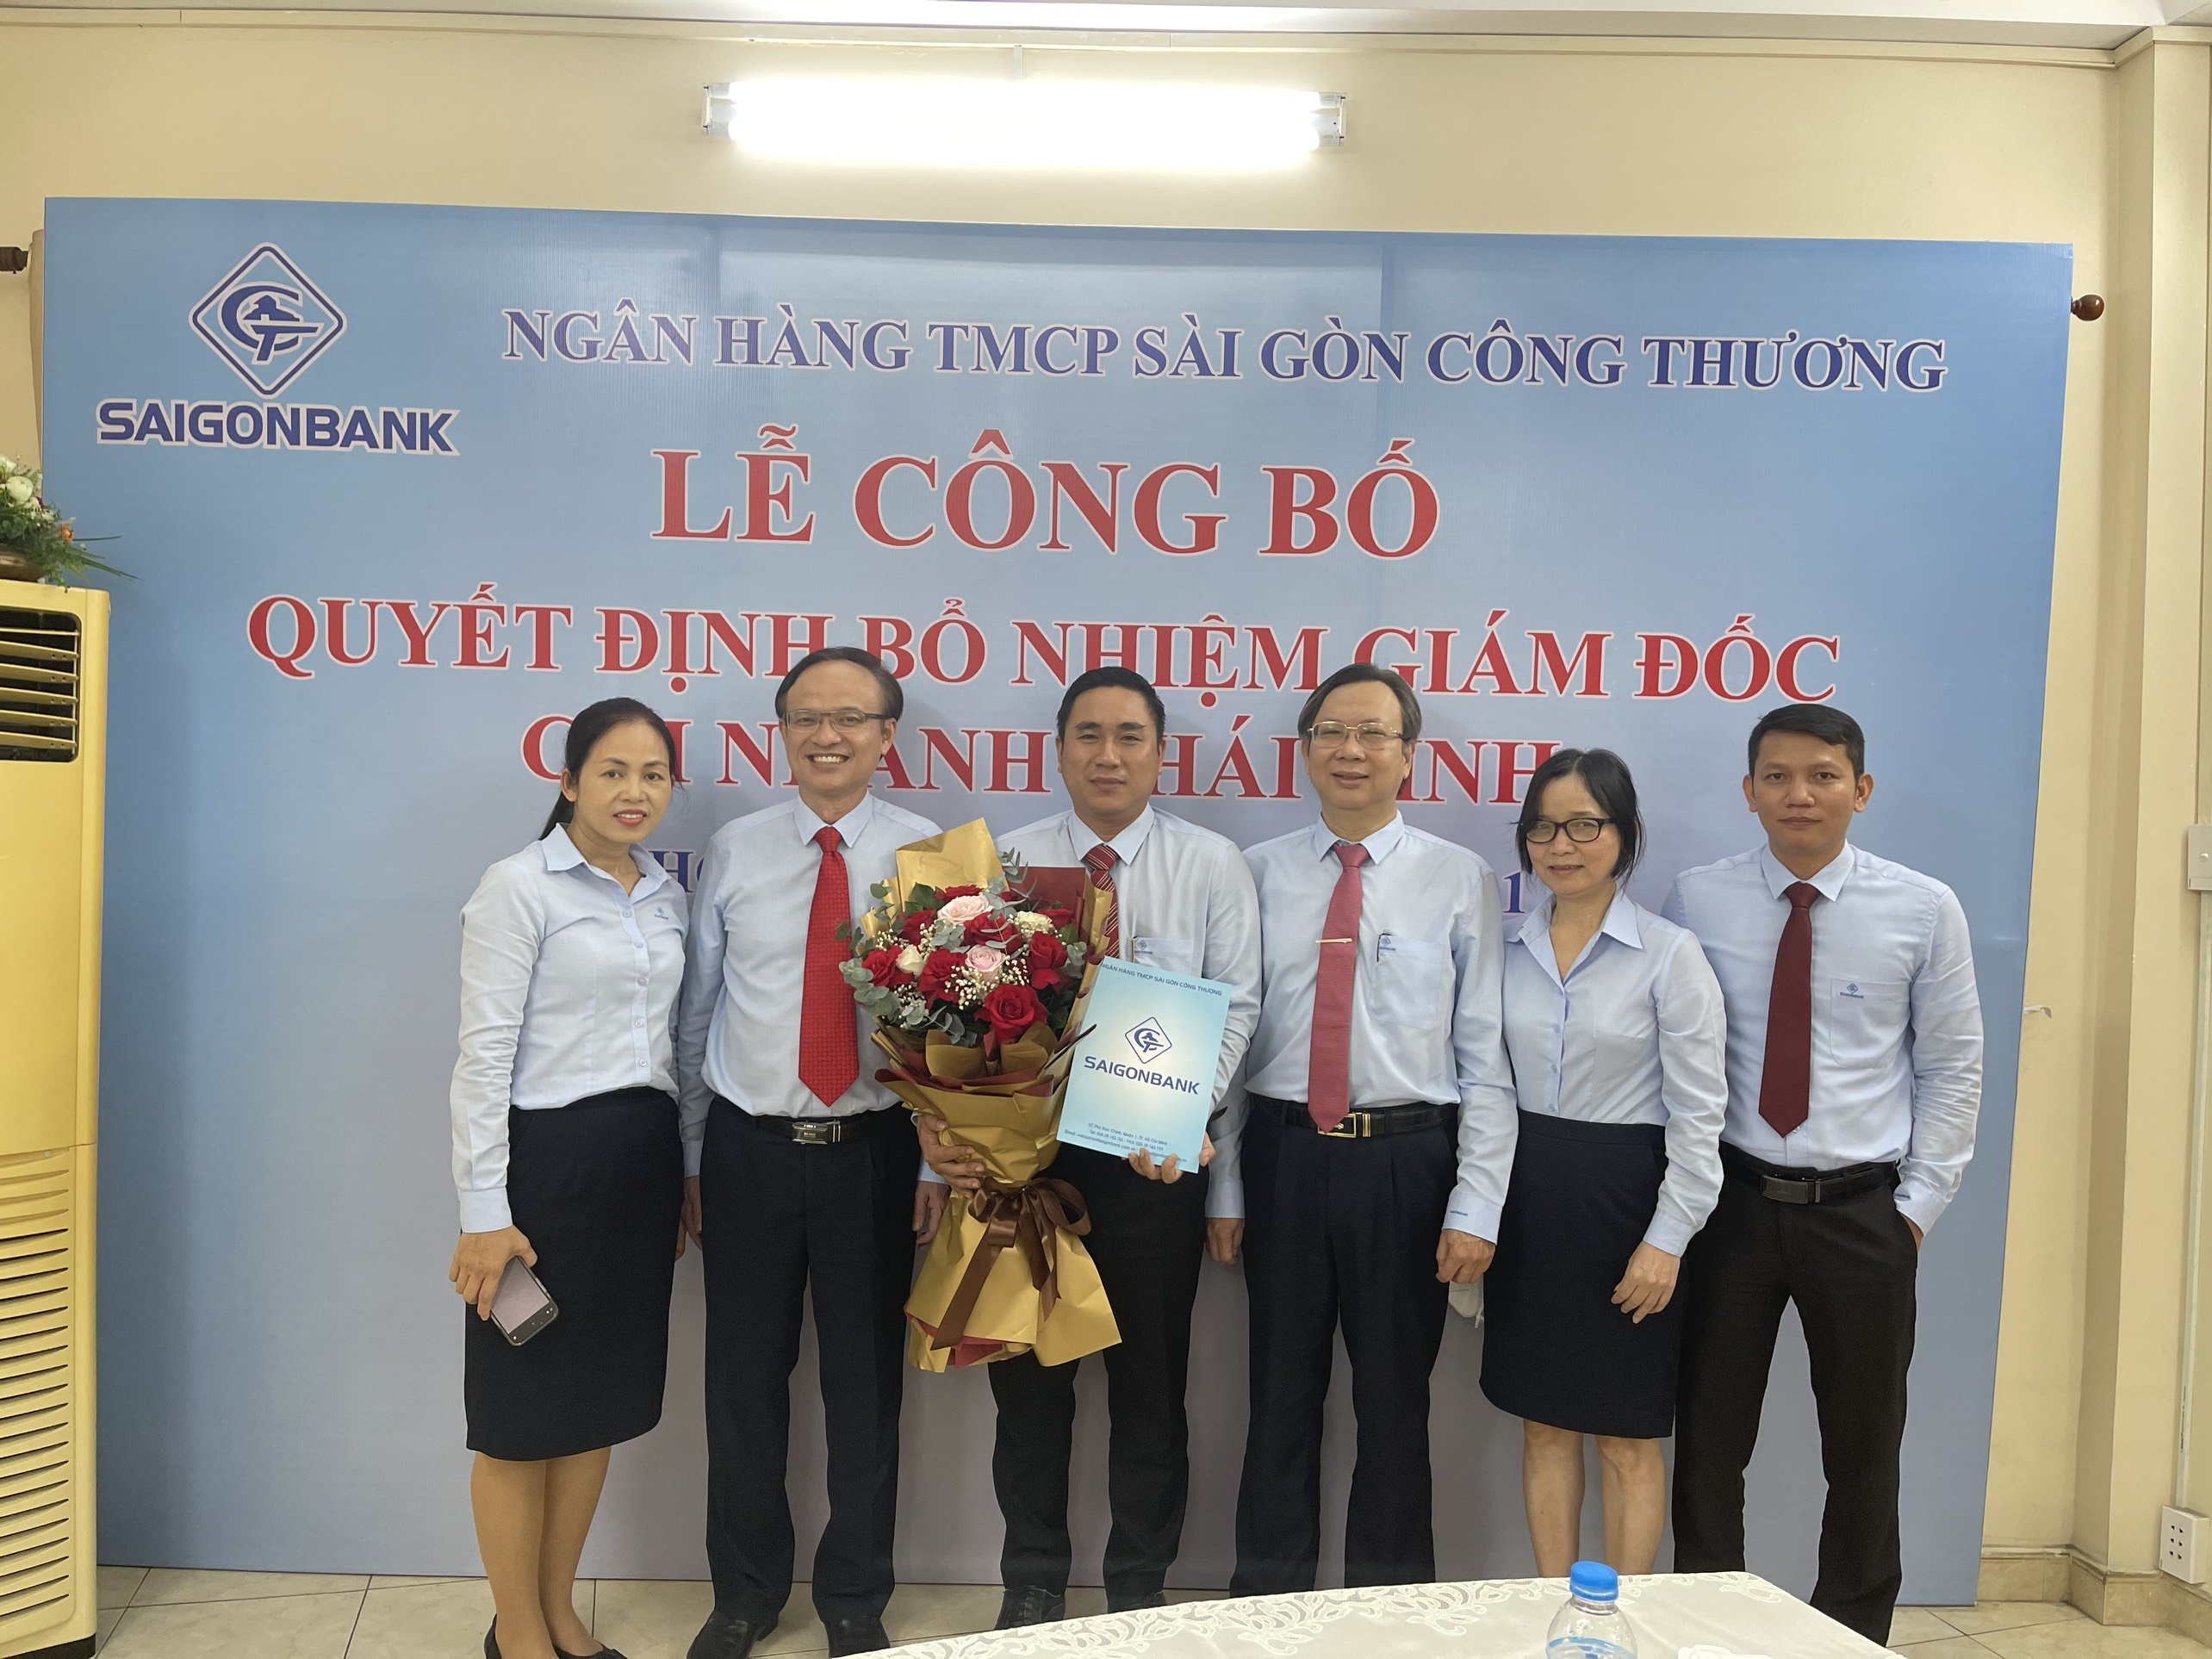 Ngân hàng TMCP Sài Gòn Công thương công bố quyết định bổ nhiệm nhân sự CN Thái Bình